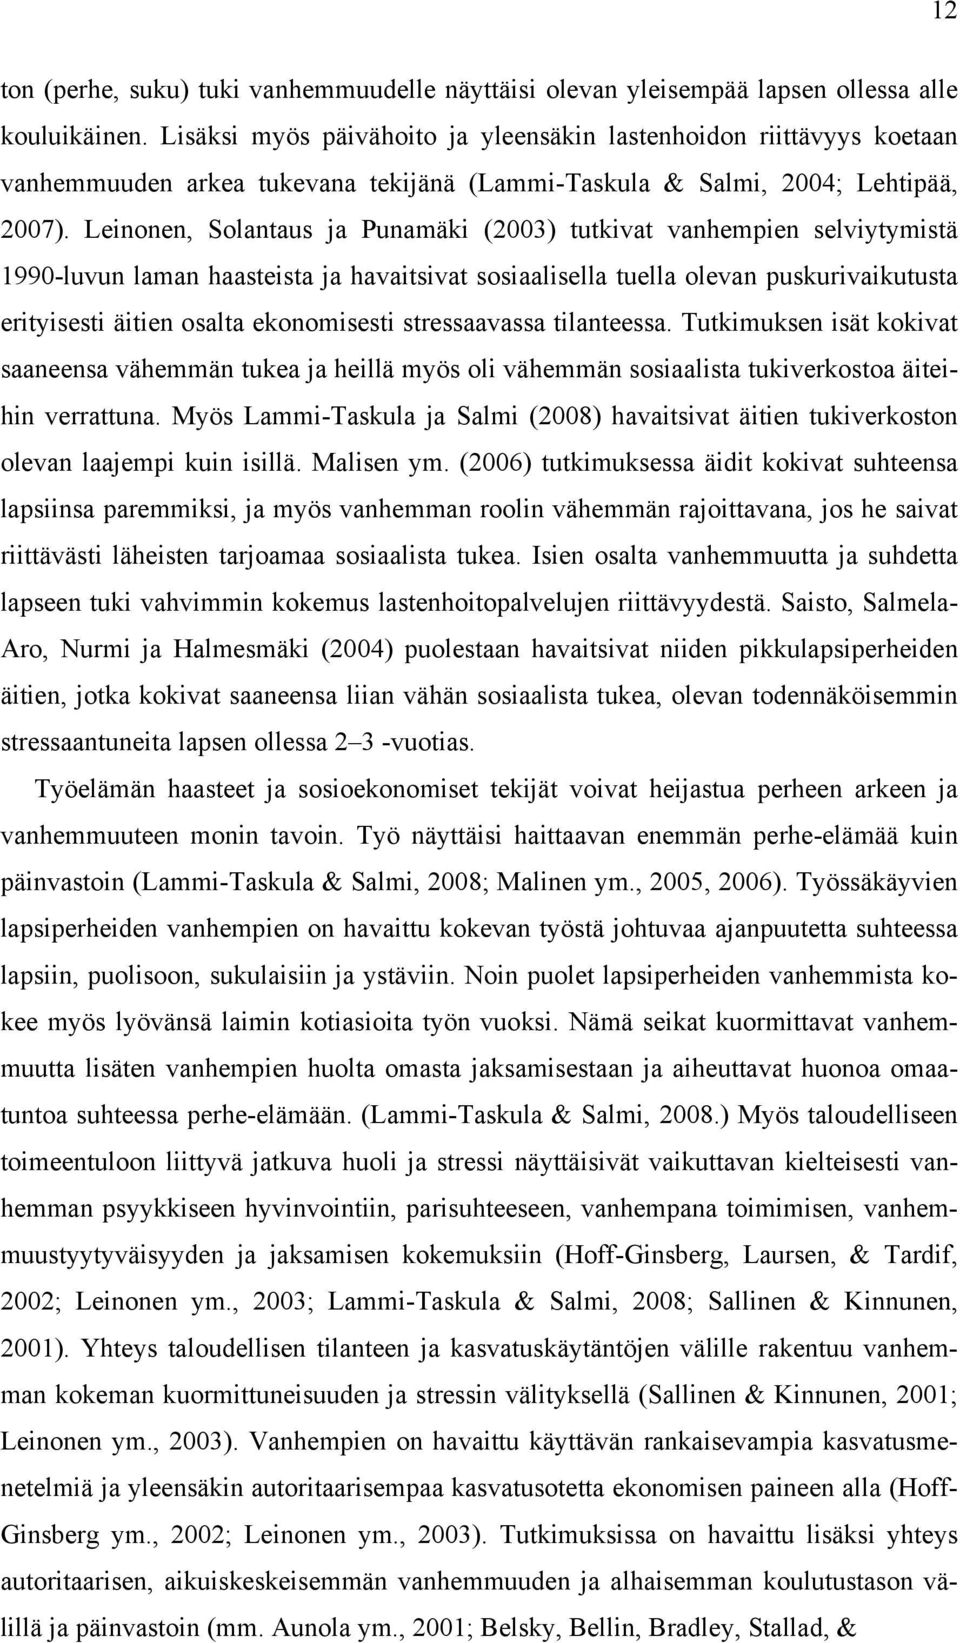 Leinonen, Solantaus ja Punamäki (2003) tutkivat vanhempien selviytymistä 1990-luvun laman haasteista ja havaitsivat sosiaalisella tuella olevan puskurivaikutusta erityisesti äitien osalta